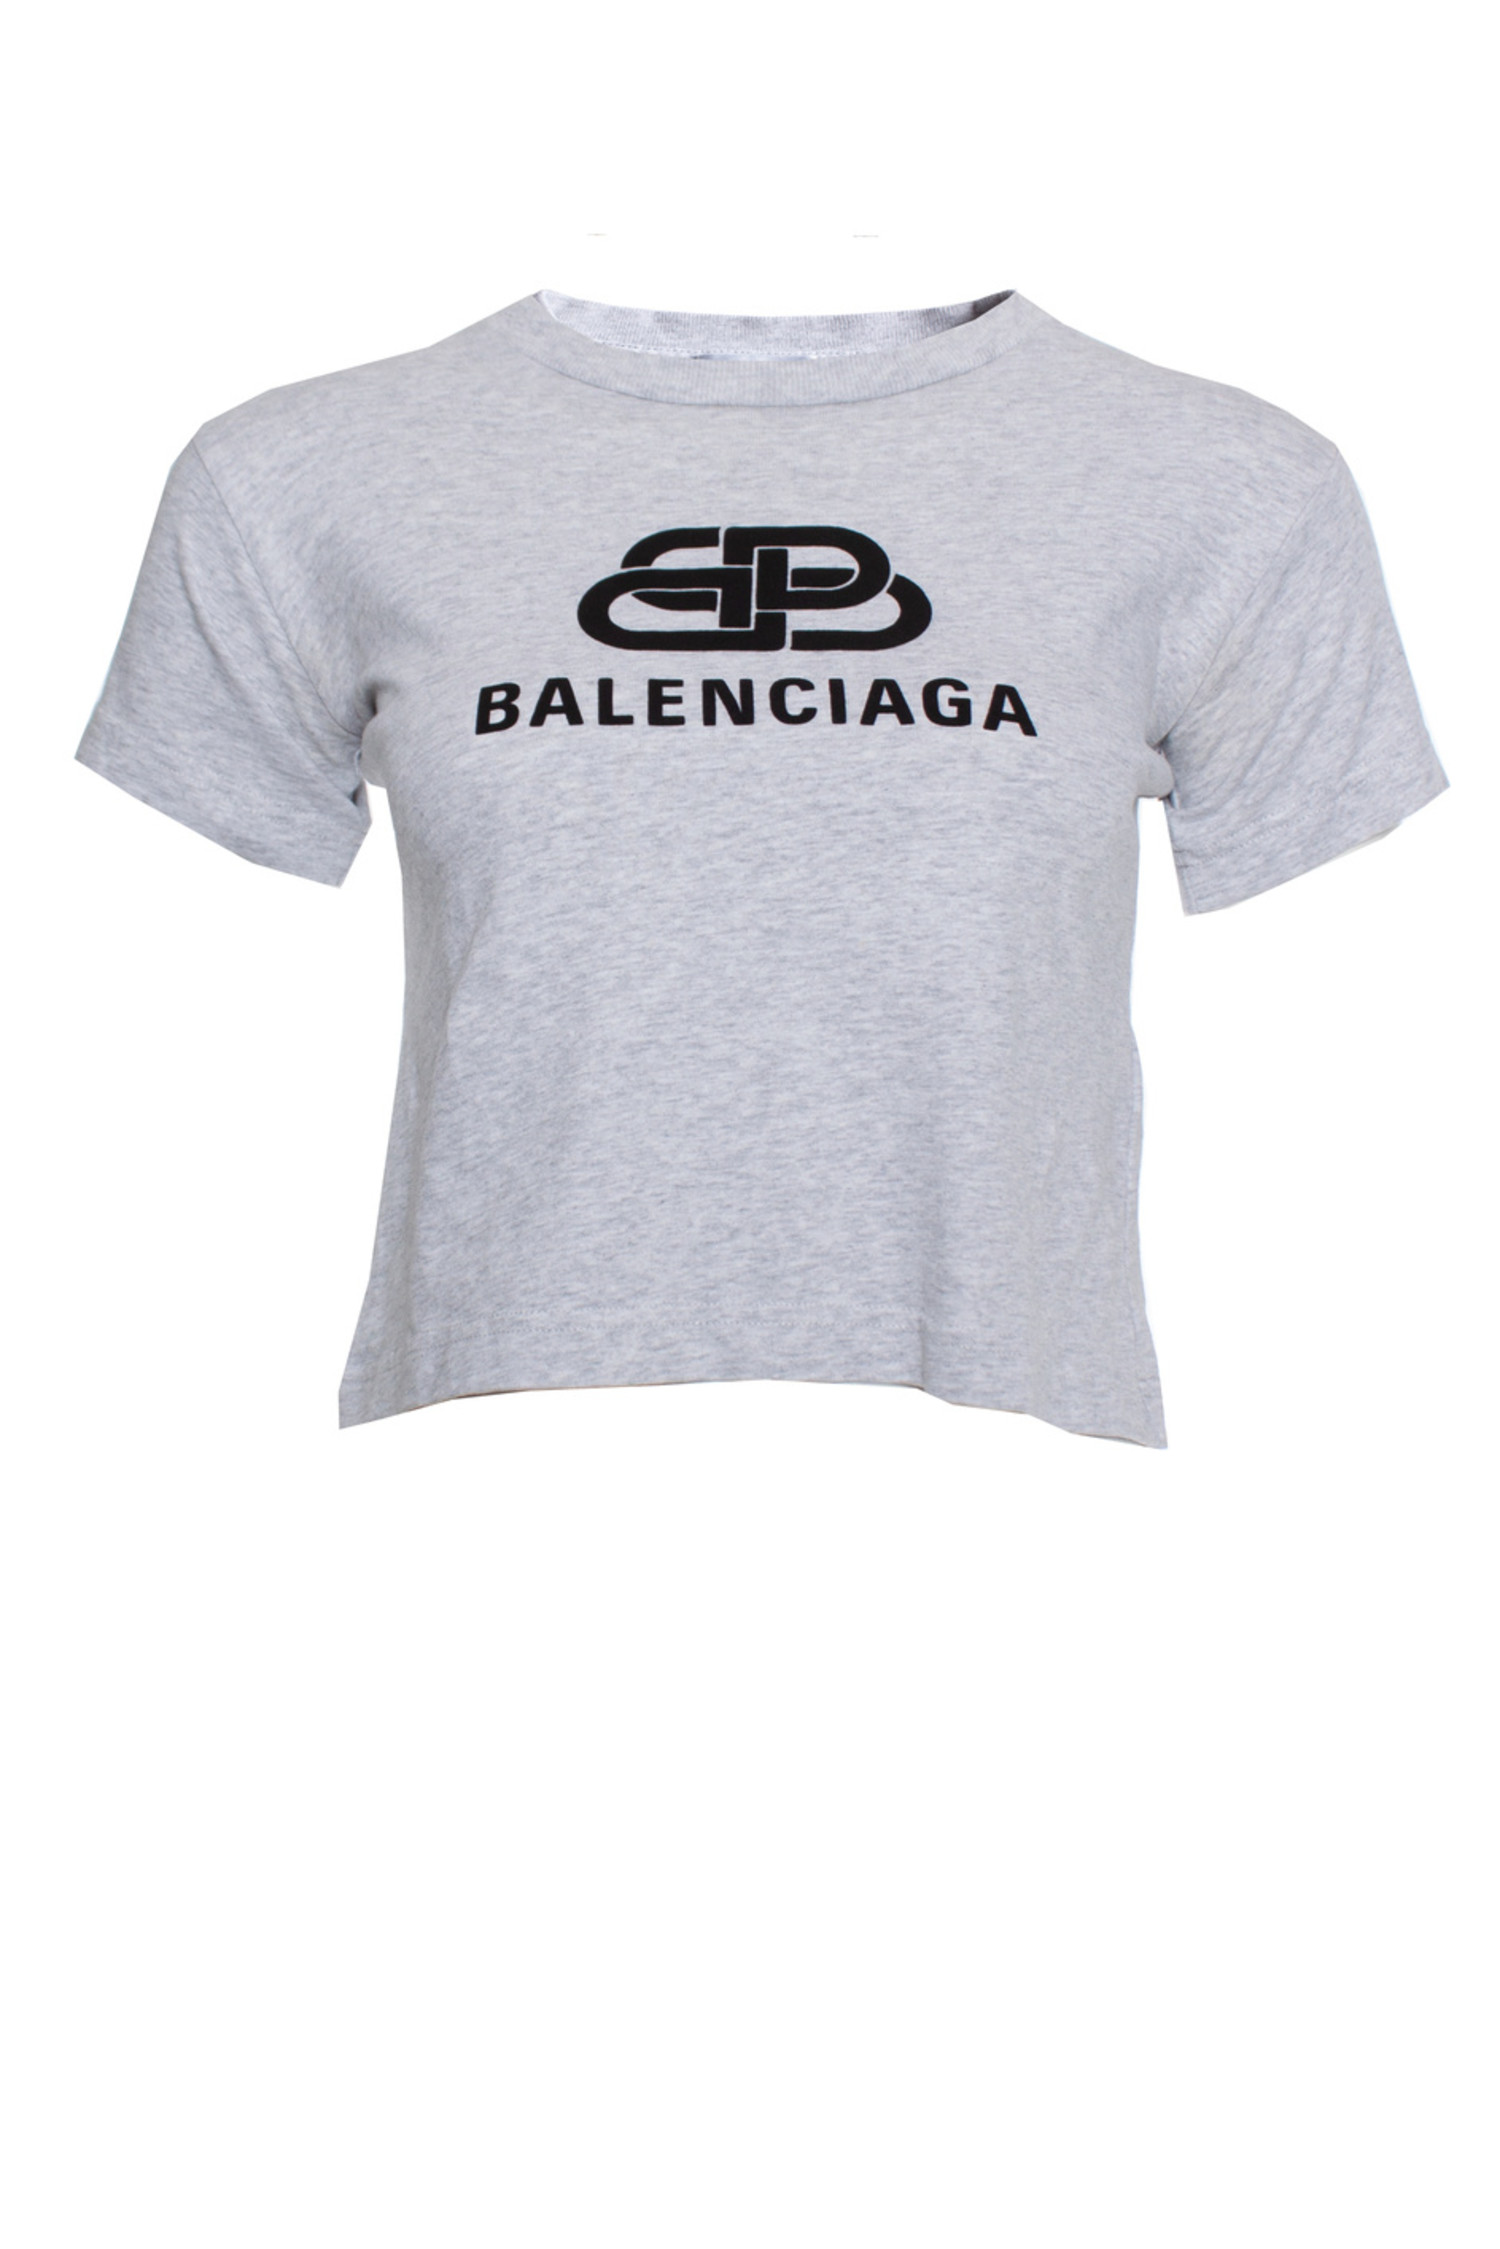 Balenciaga BB Corp TShirt  Harrods DE